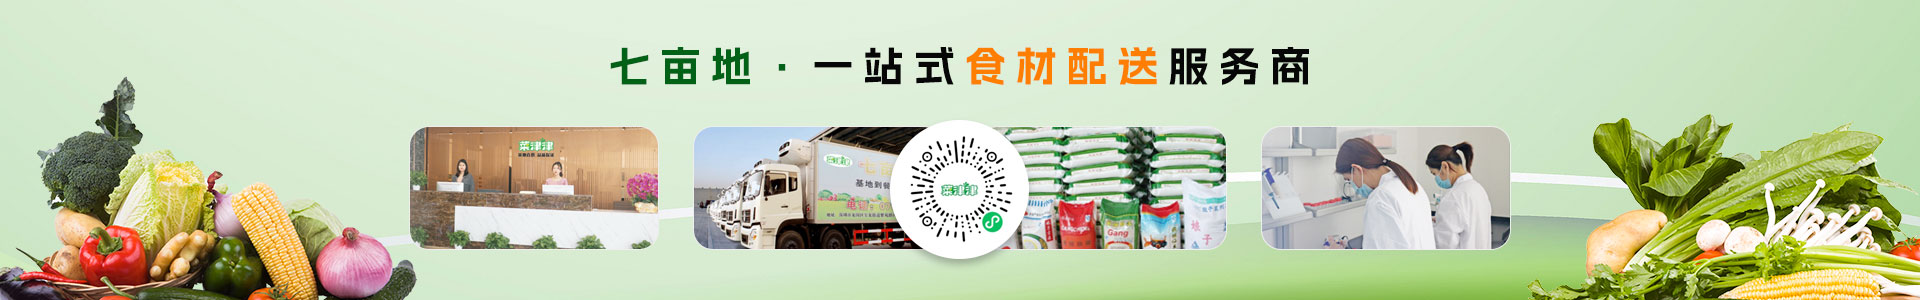 深圳市七亩地农产品实业有限公司-红萝卜配送